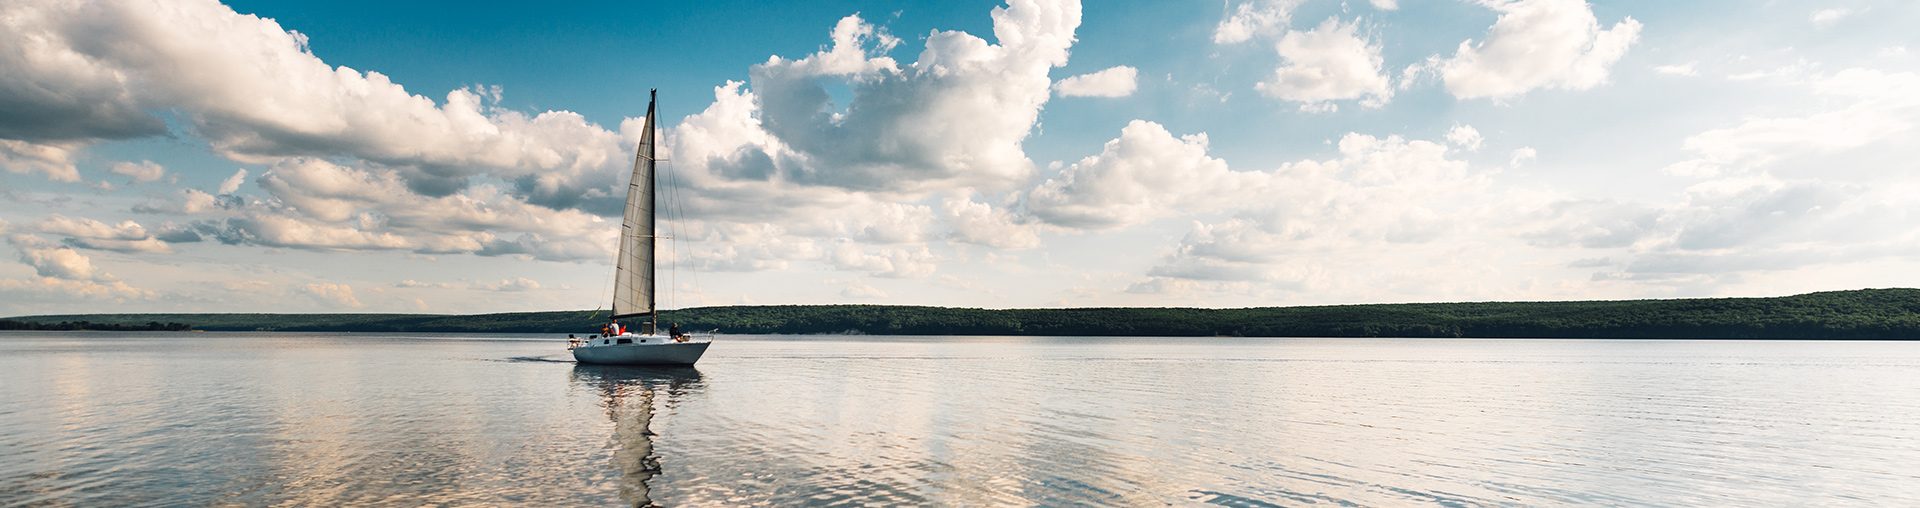 Samotna żaglówka pływającą po spokojnym mazurskim jeziorze. 